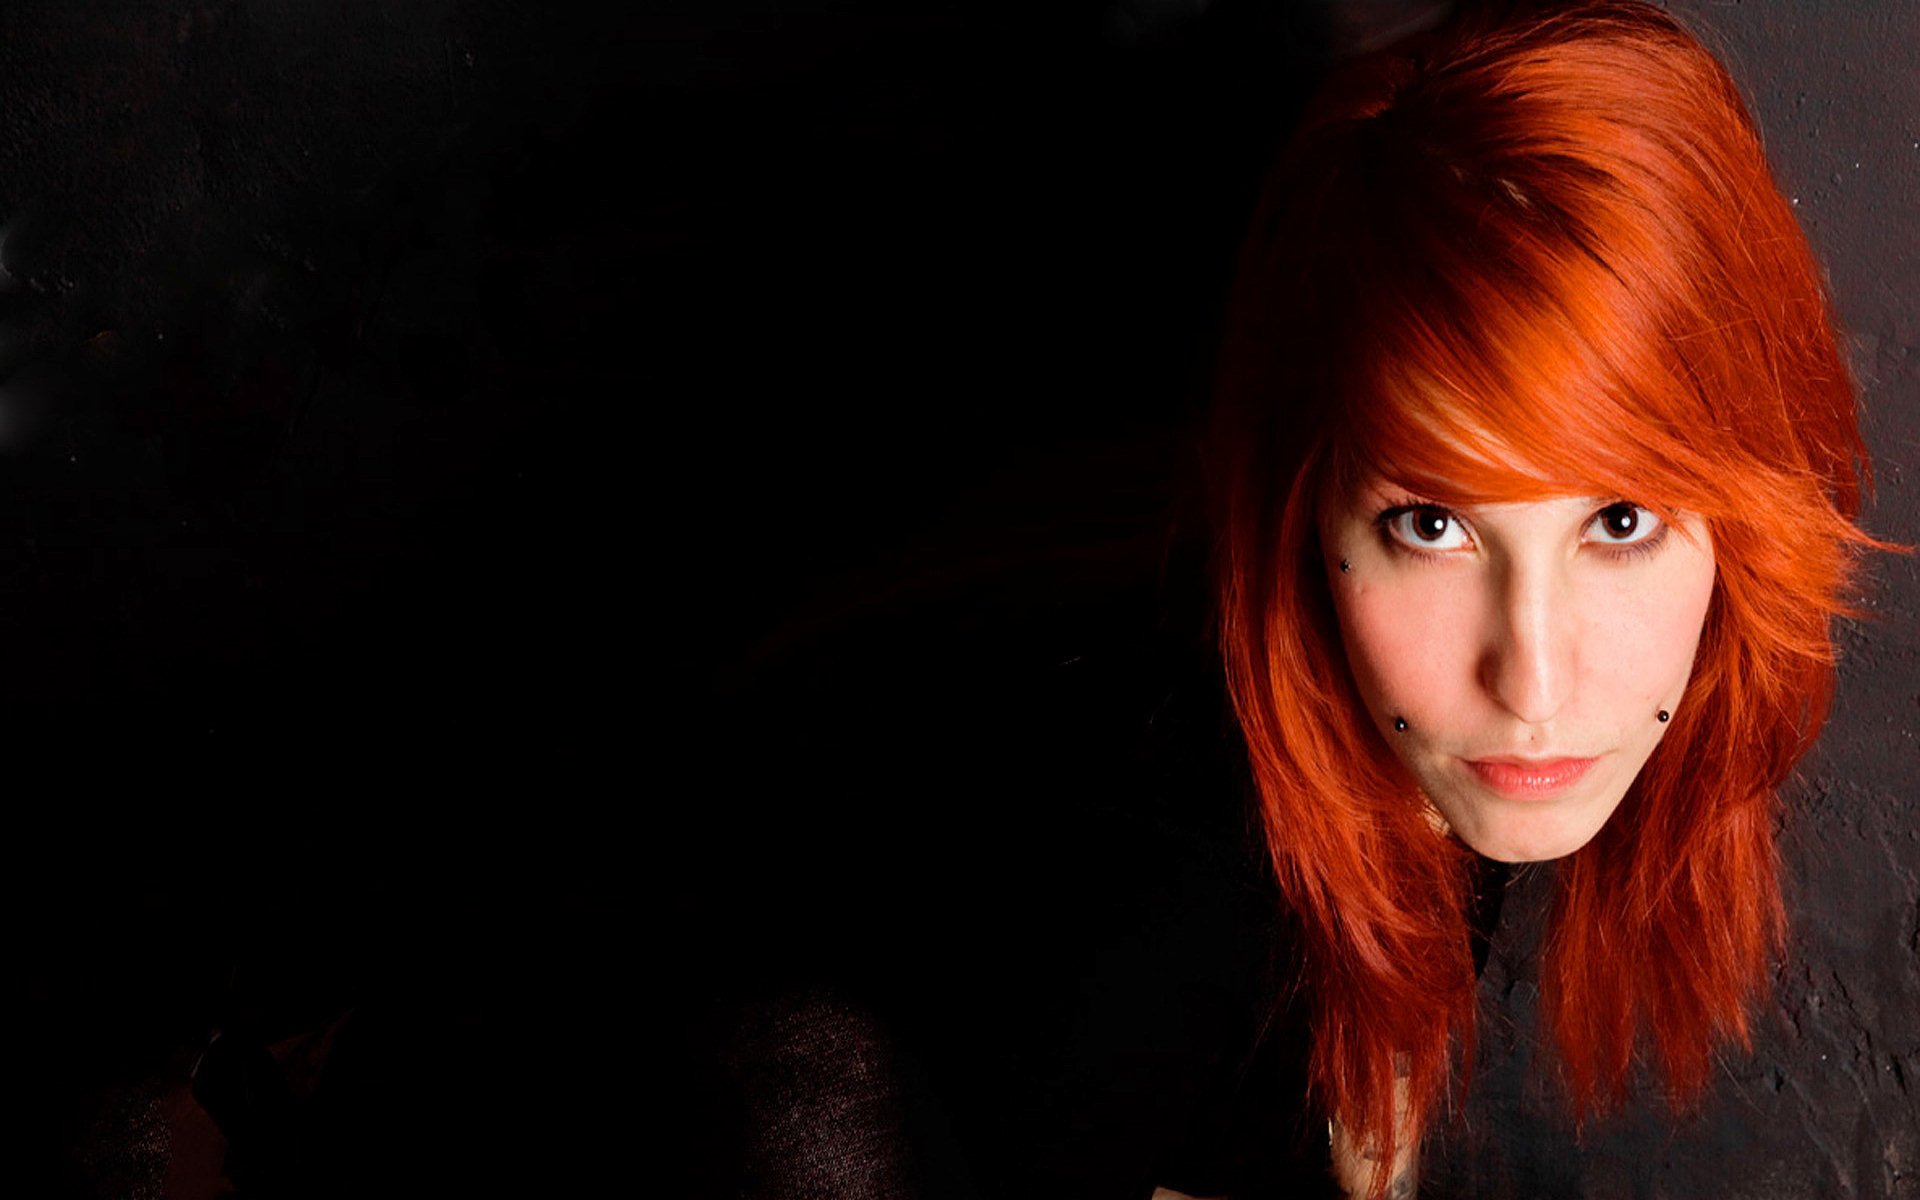 Рыжий цвет волос на короткие волосы с зелеными глазами фото